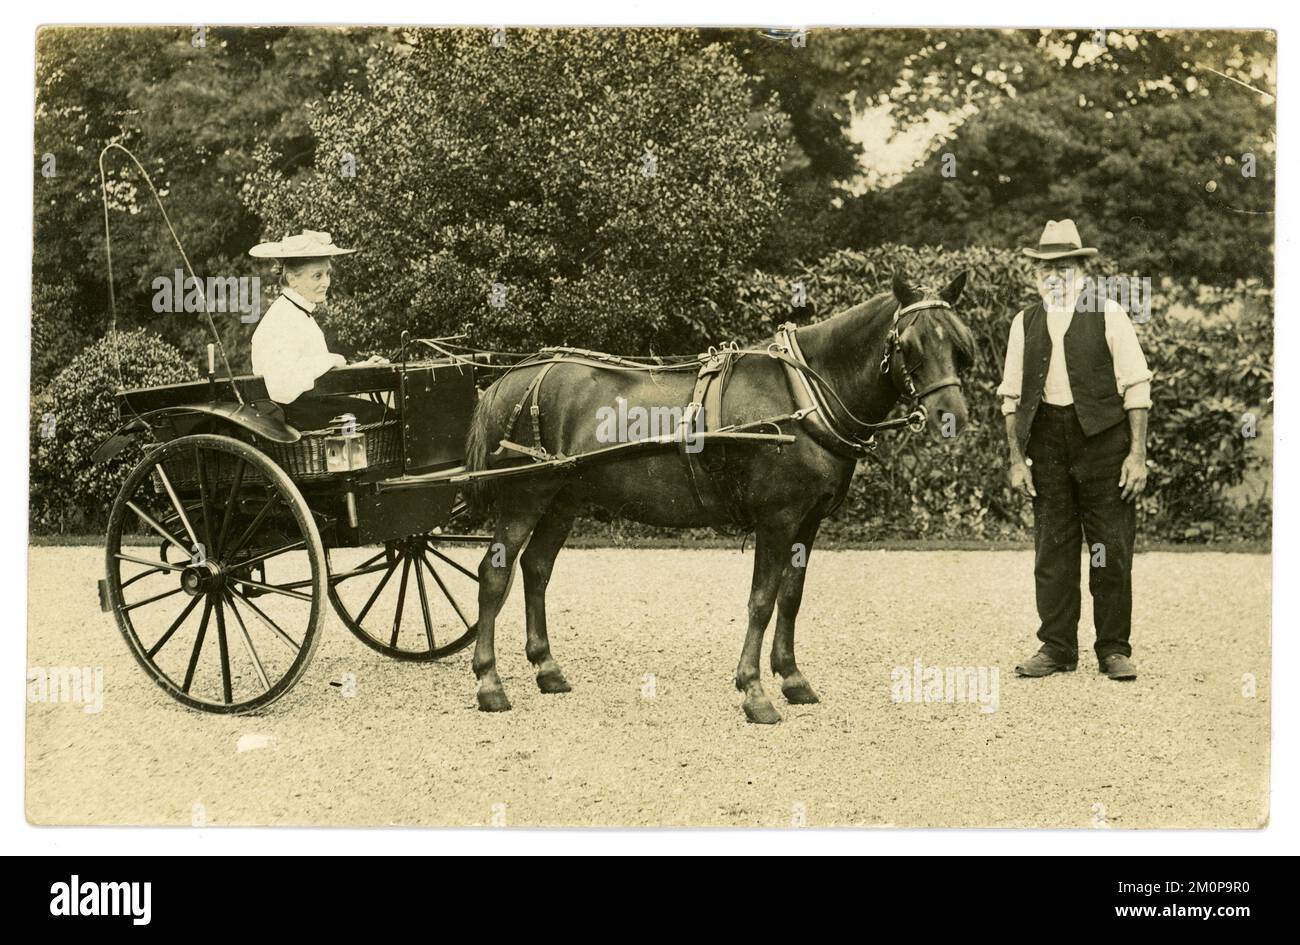 Carte postale originale du début des années 1900 de femme mature de classe supérieure portant un chapeau d'été à la mode, assis dans un poney et piégé avec un serviteur, dans la conduite d'une grande maison, vers 1910, Royaume-Uni Banque D'Images